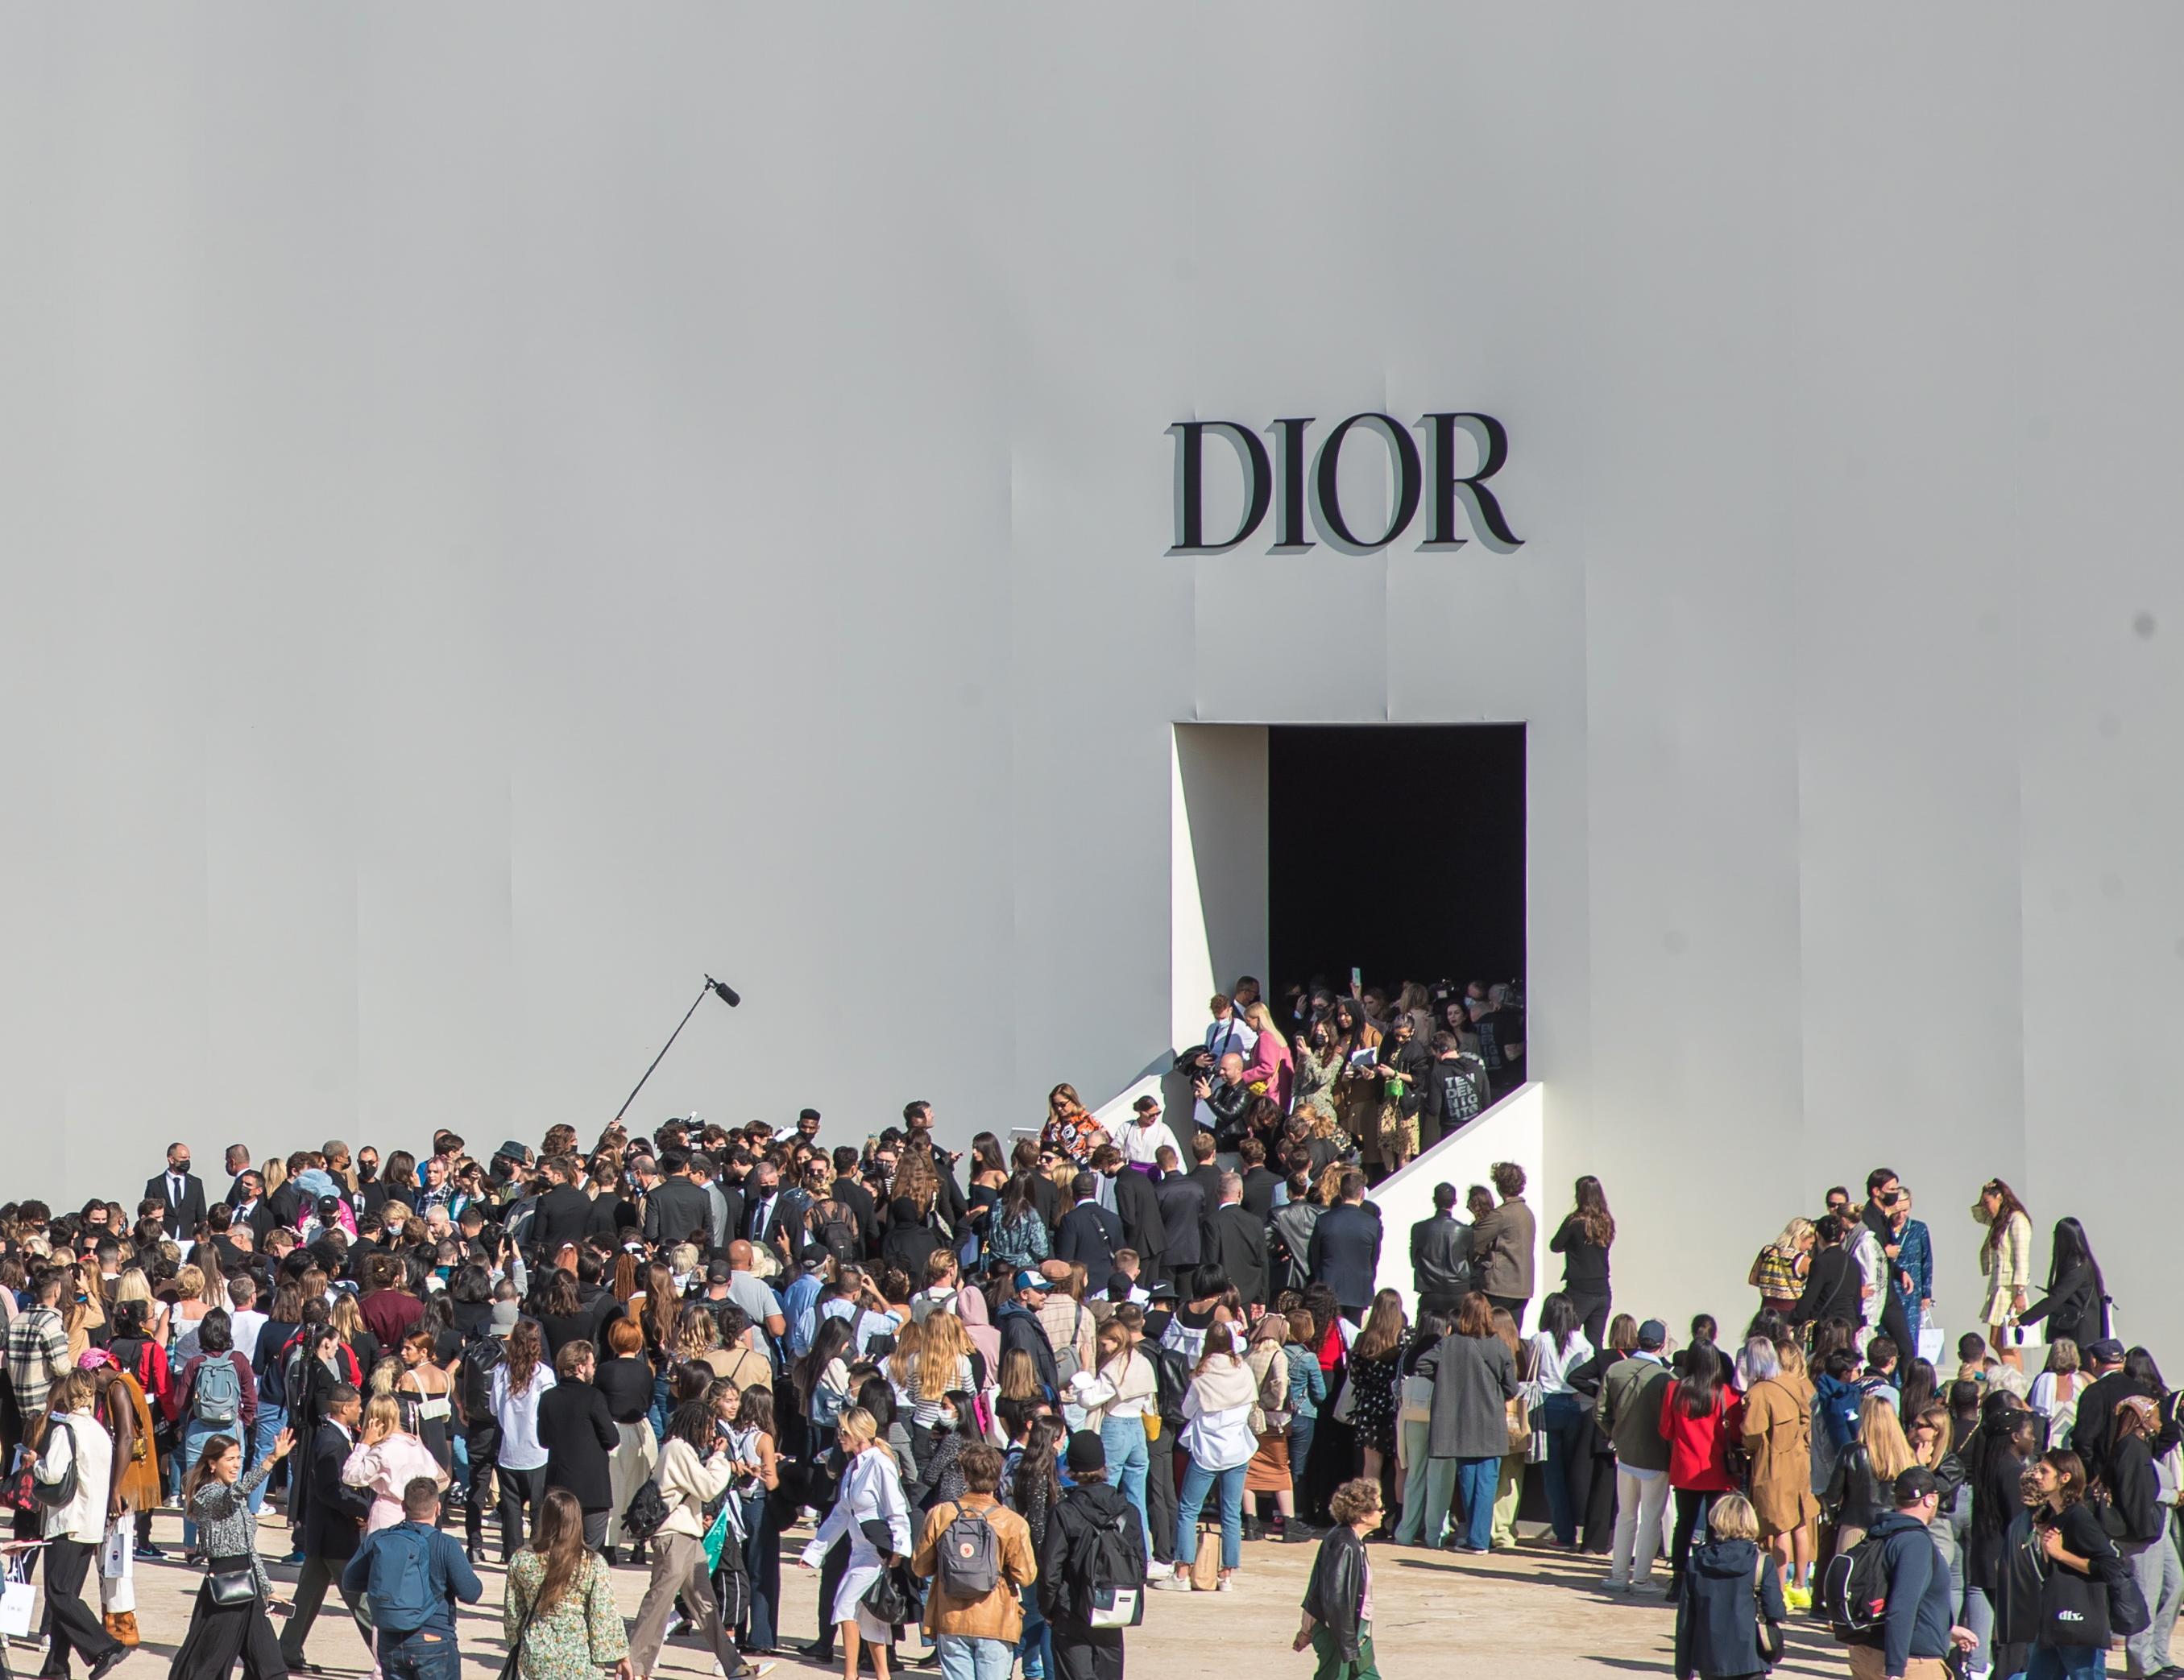 RECONOCIDO: Dior fue fundada en 1946 por el diseñador francés Christian Dior. Las exhibiciones de sus últimas colecciones siempre crean vida y revuelo en París. Aquí vemos a los invitados en camino a su vista desde 2021.